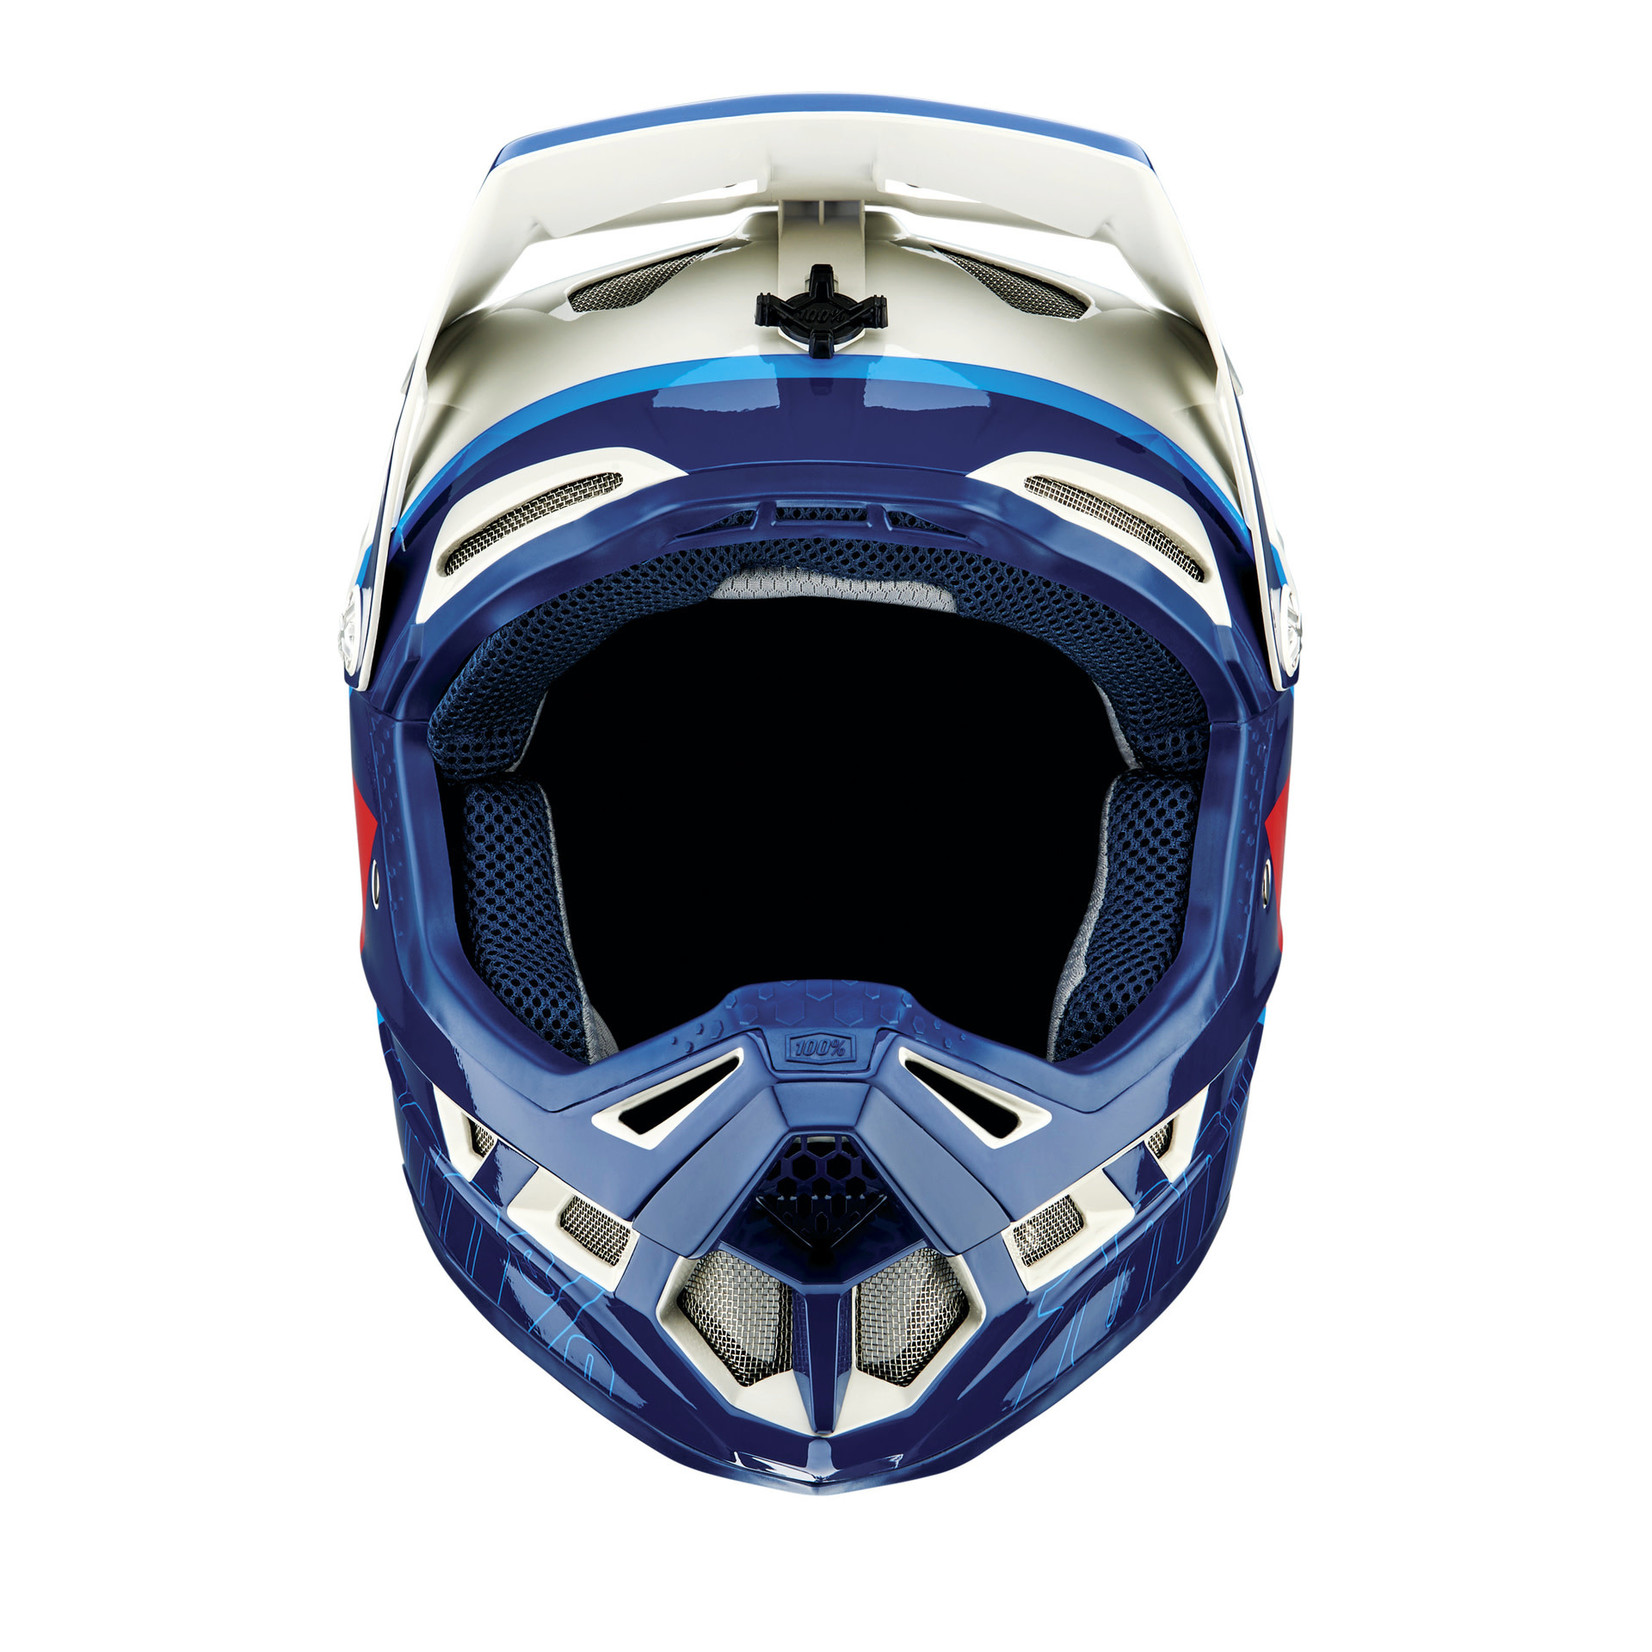 100 Percent 100% Aircraft Premier Fiberglass Composite Downhill MTB Bike Helmet - Trigger